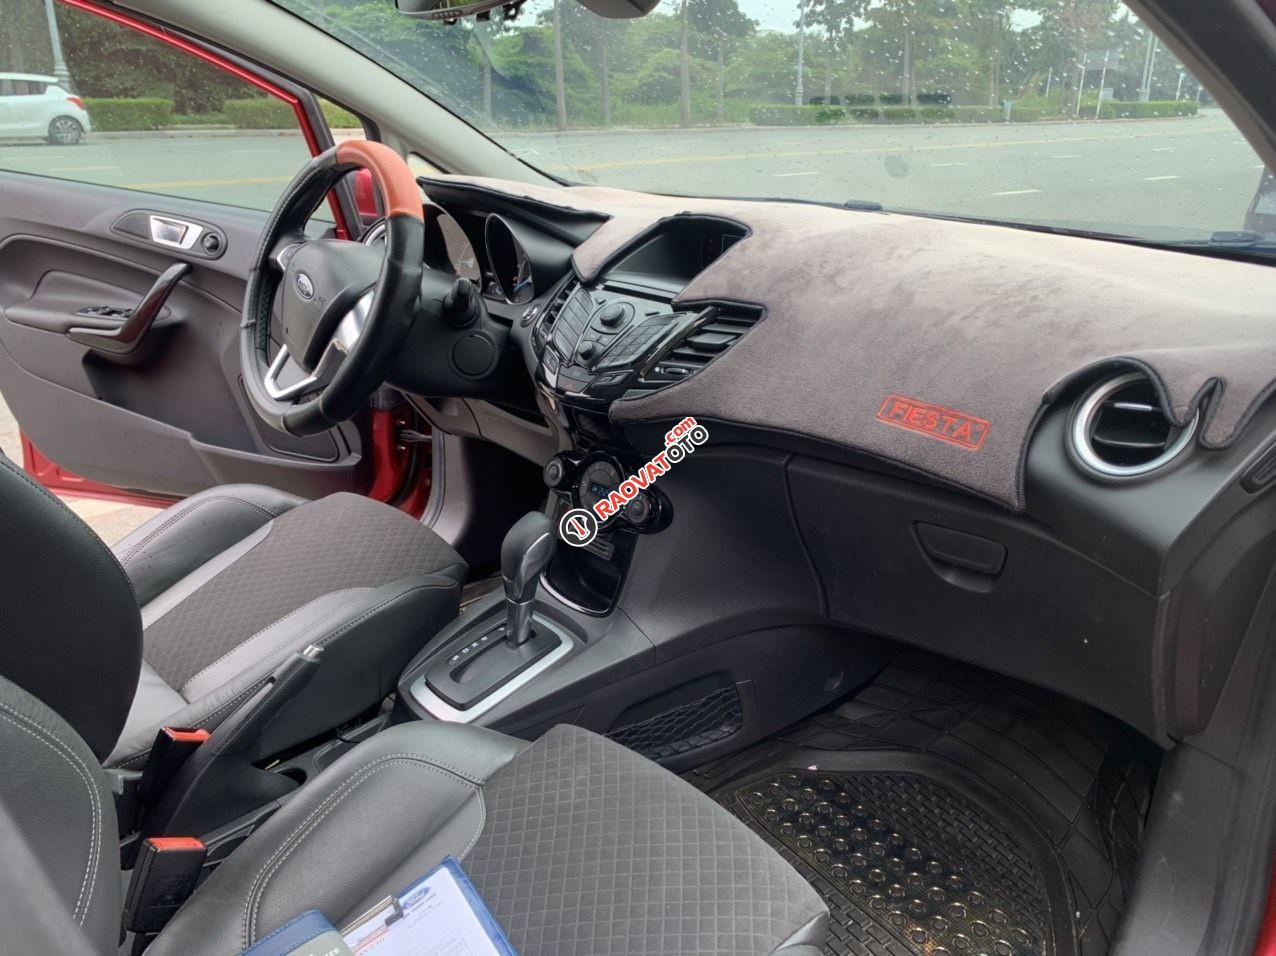 Bán xe Ford Fiesta 2018 Titanium - 1 chủ mới chạy 30.000km - Bao test hãng sản xuất 2018-6